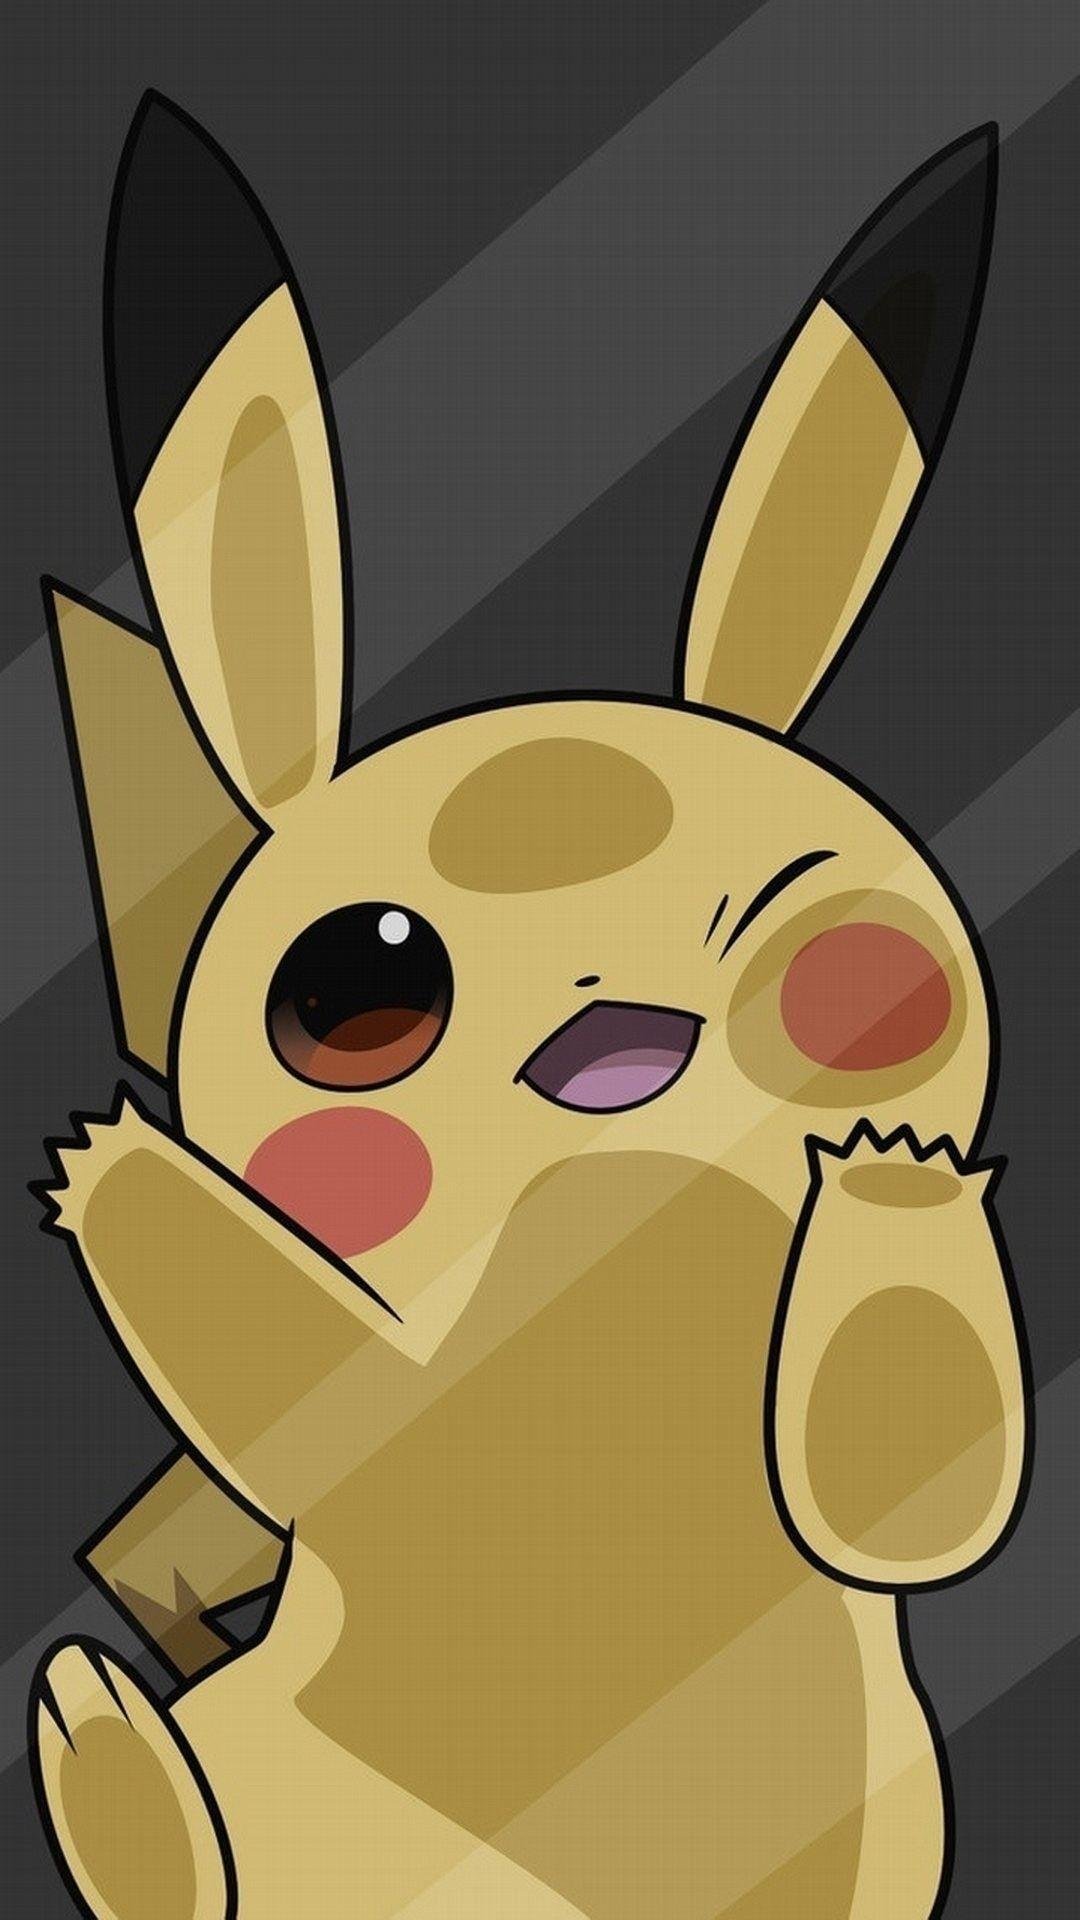 Pikachu pokemon Wallpapers Download